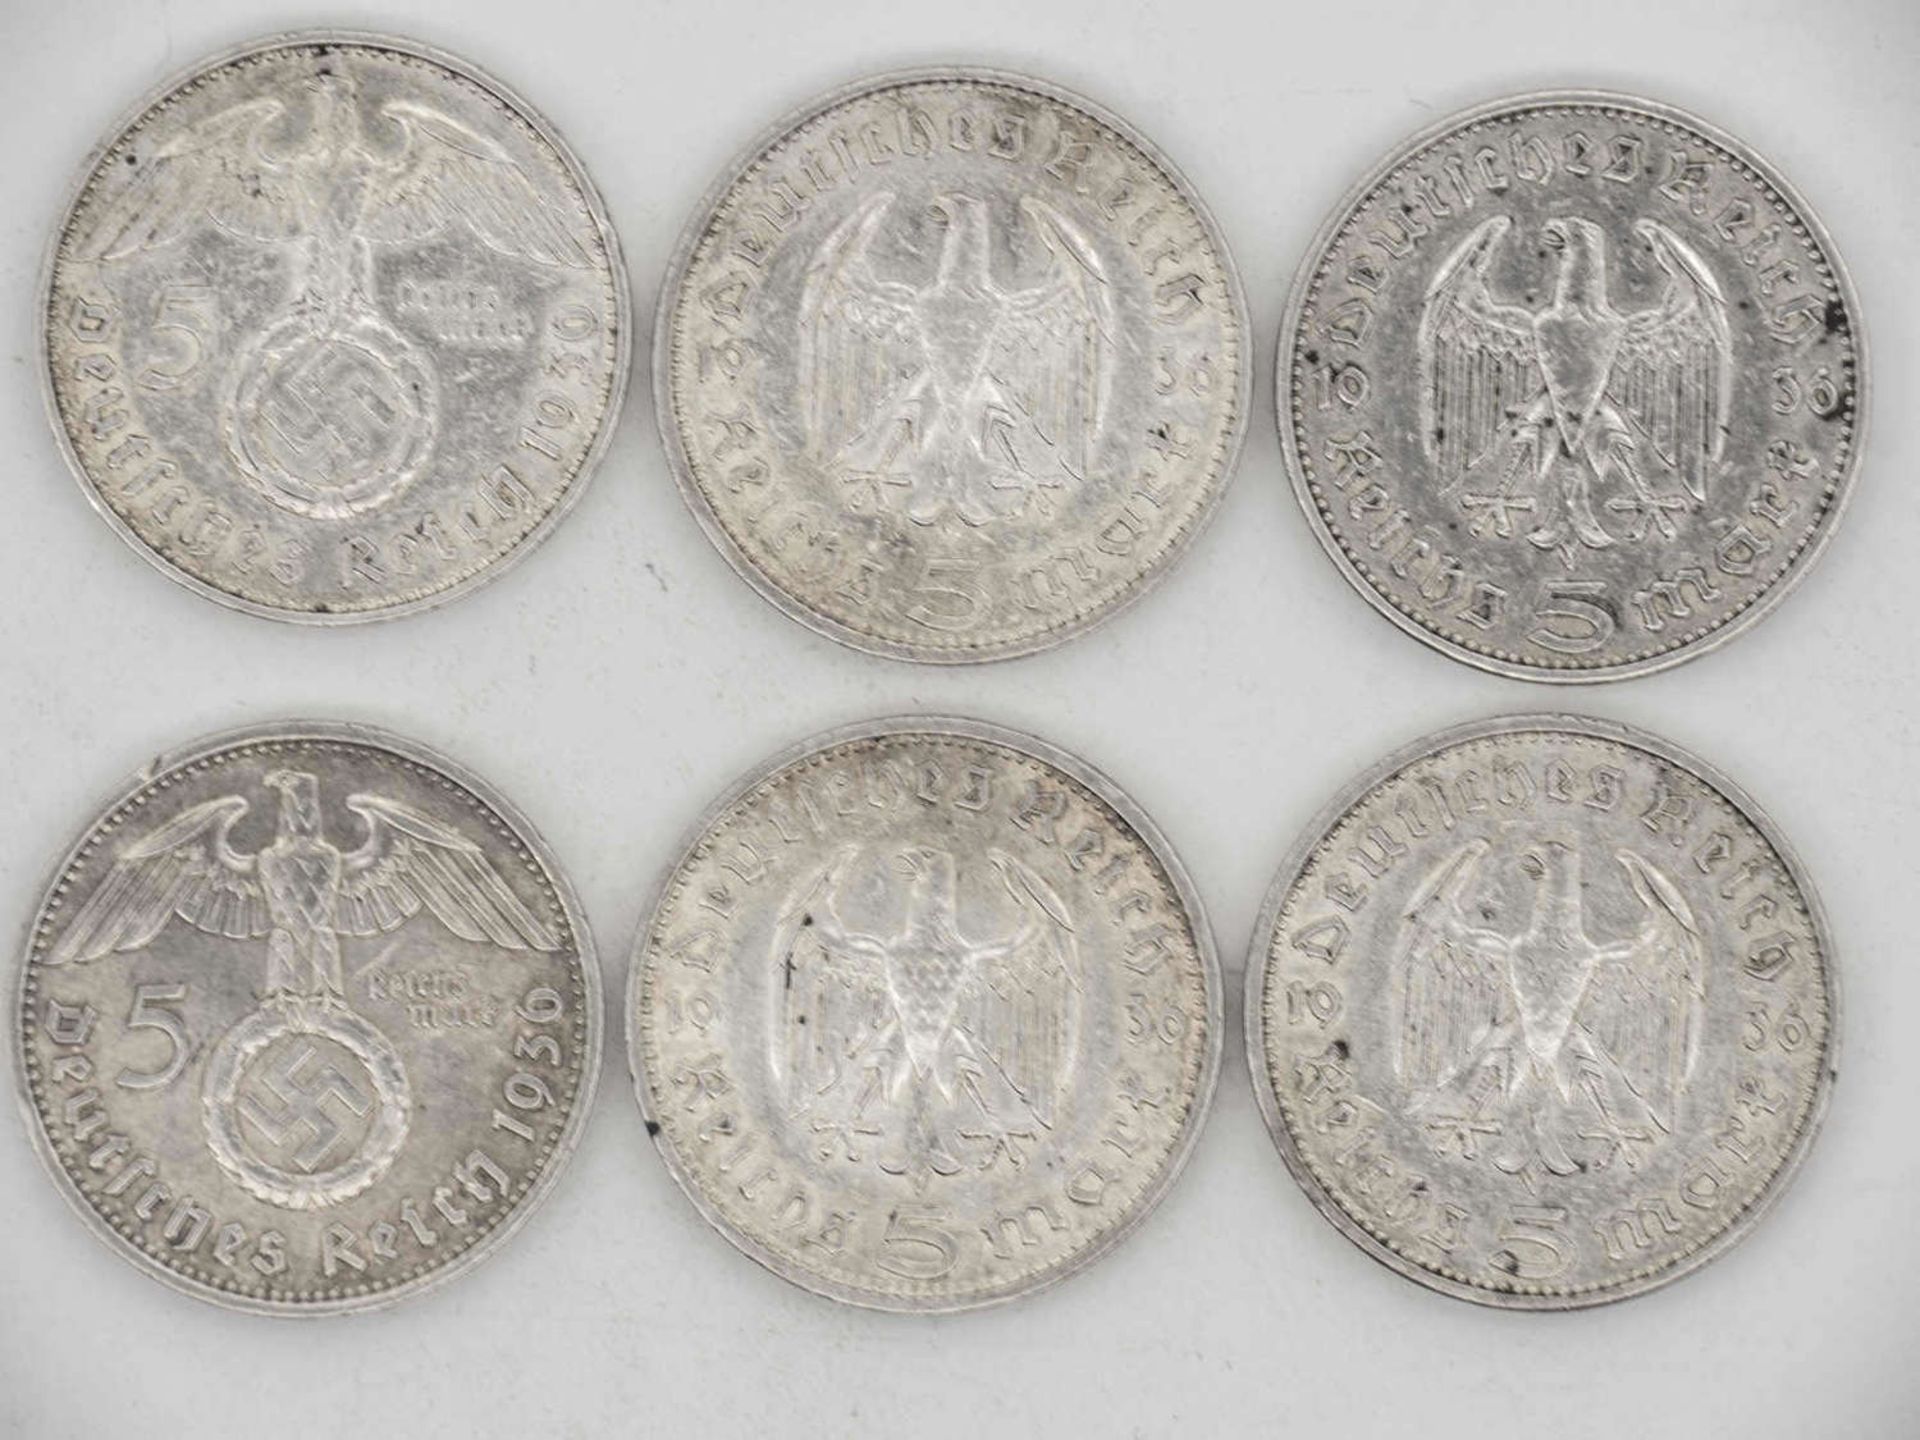 Deutschland 1936 A, D, J, Lot 5.- Reichsmark - Silbermünzen "Hindenburg". Qualität: ss.